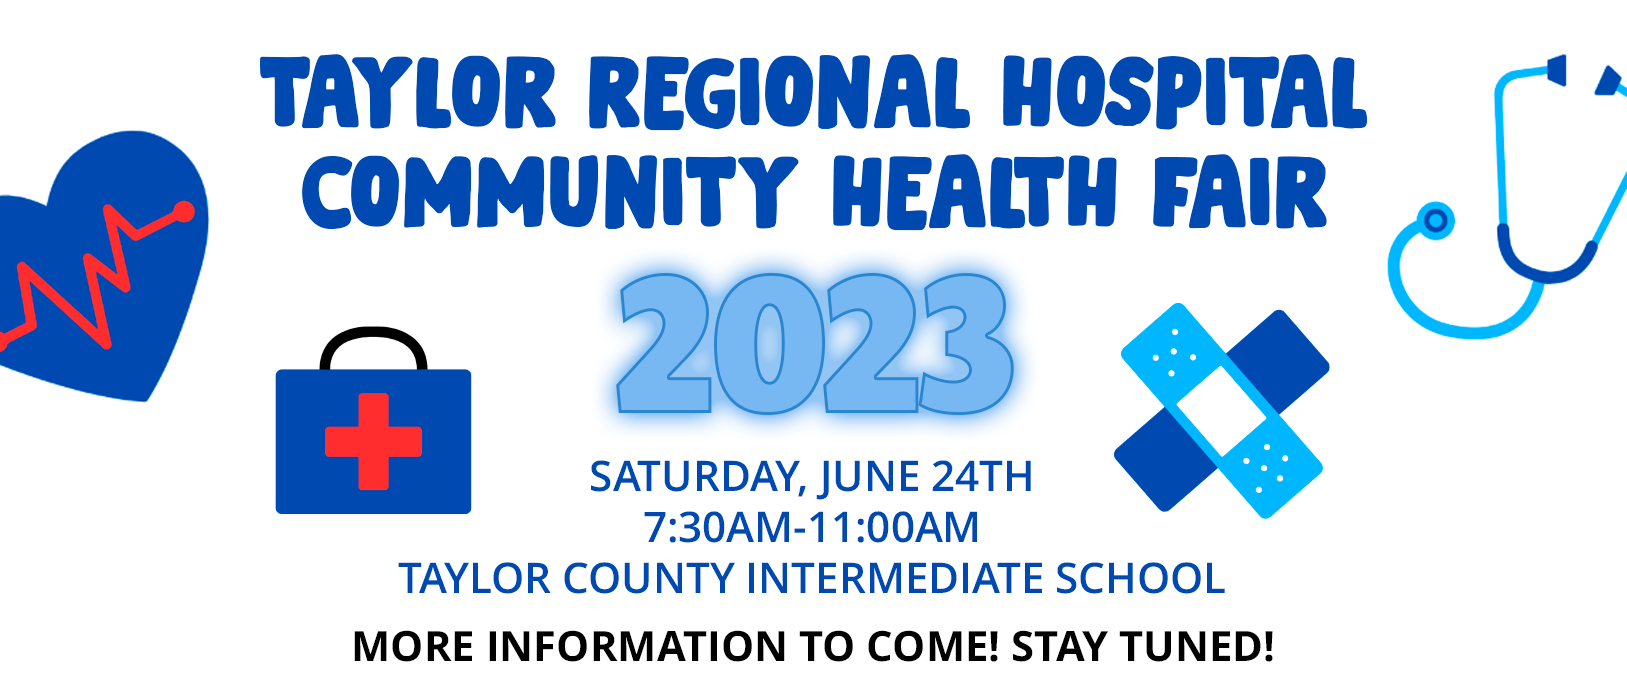 Taylor Regional Hospital Community Health Fair

2023

Saturday, June 24th | 7:30am - 11:00am
Taylor County Intermediate School